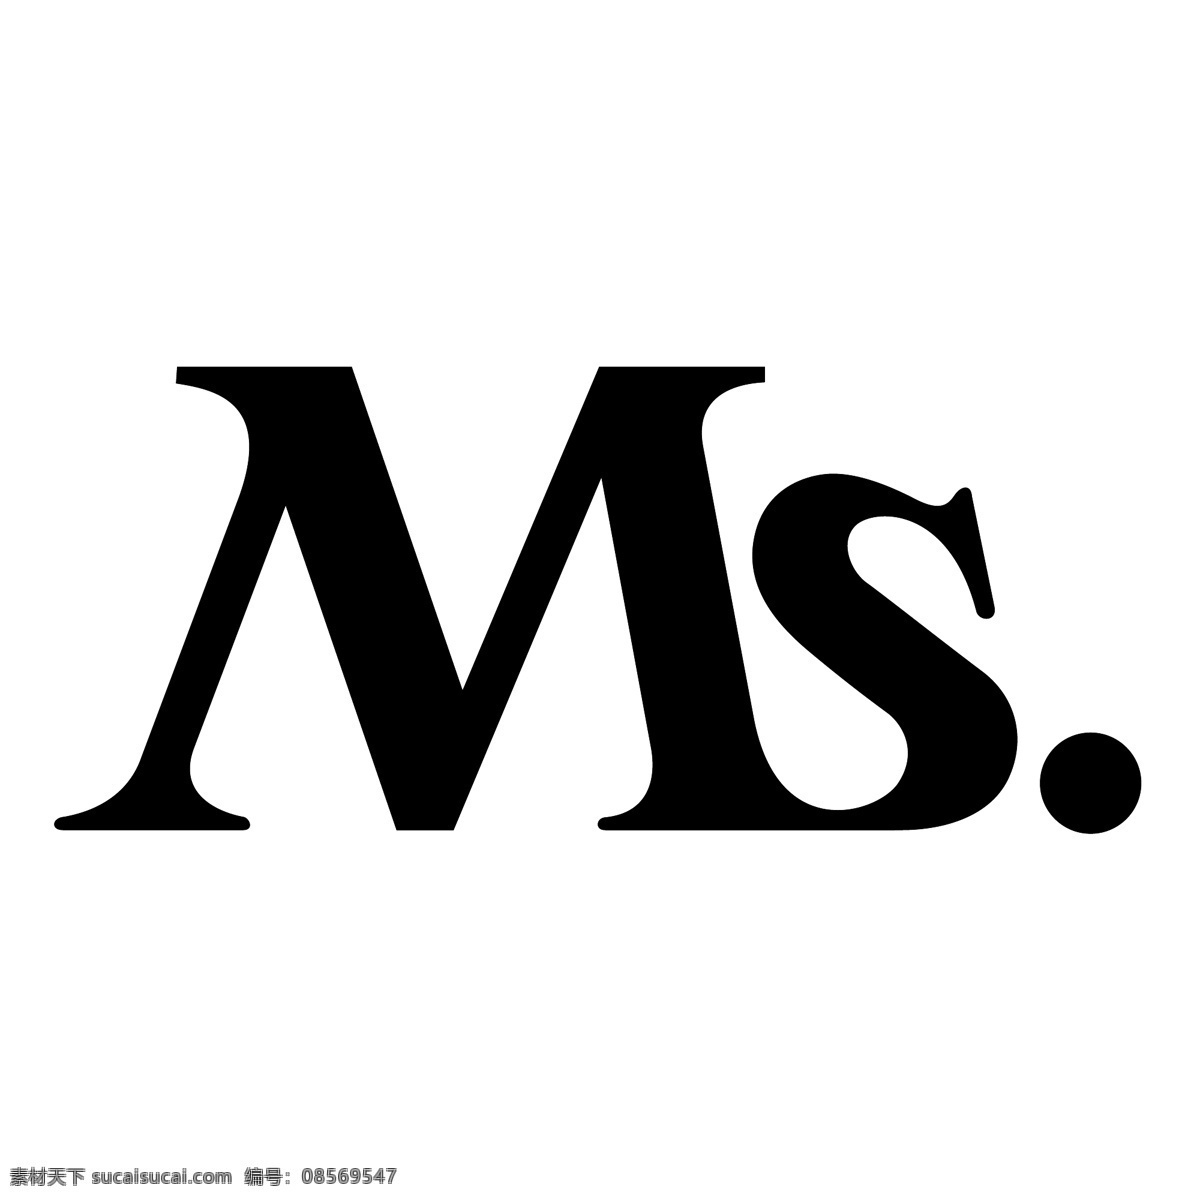 1级 标识 名片 矢量标志下载 ms dos trebuchet 标志 dos的标志 在ms office 矢量 矢量ms ms国际标志 t 超音速 轰炸机 ms的标志